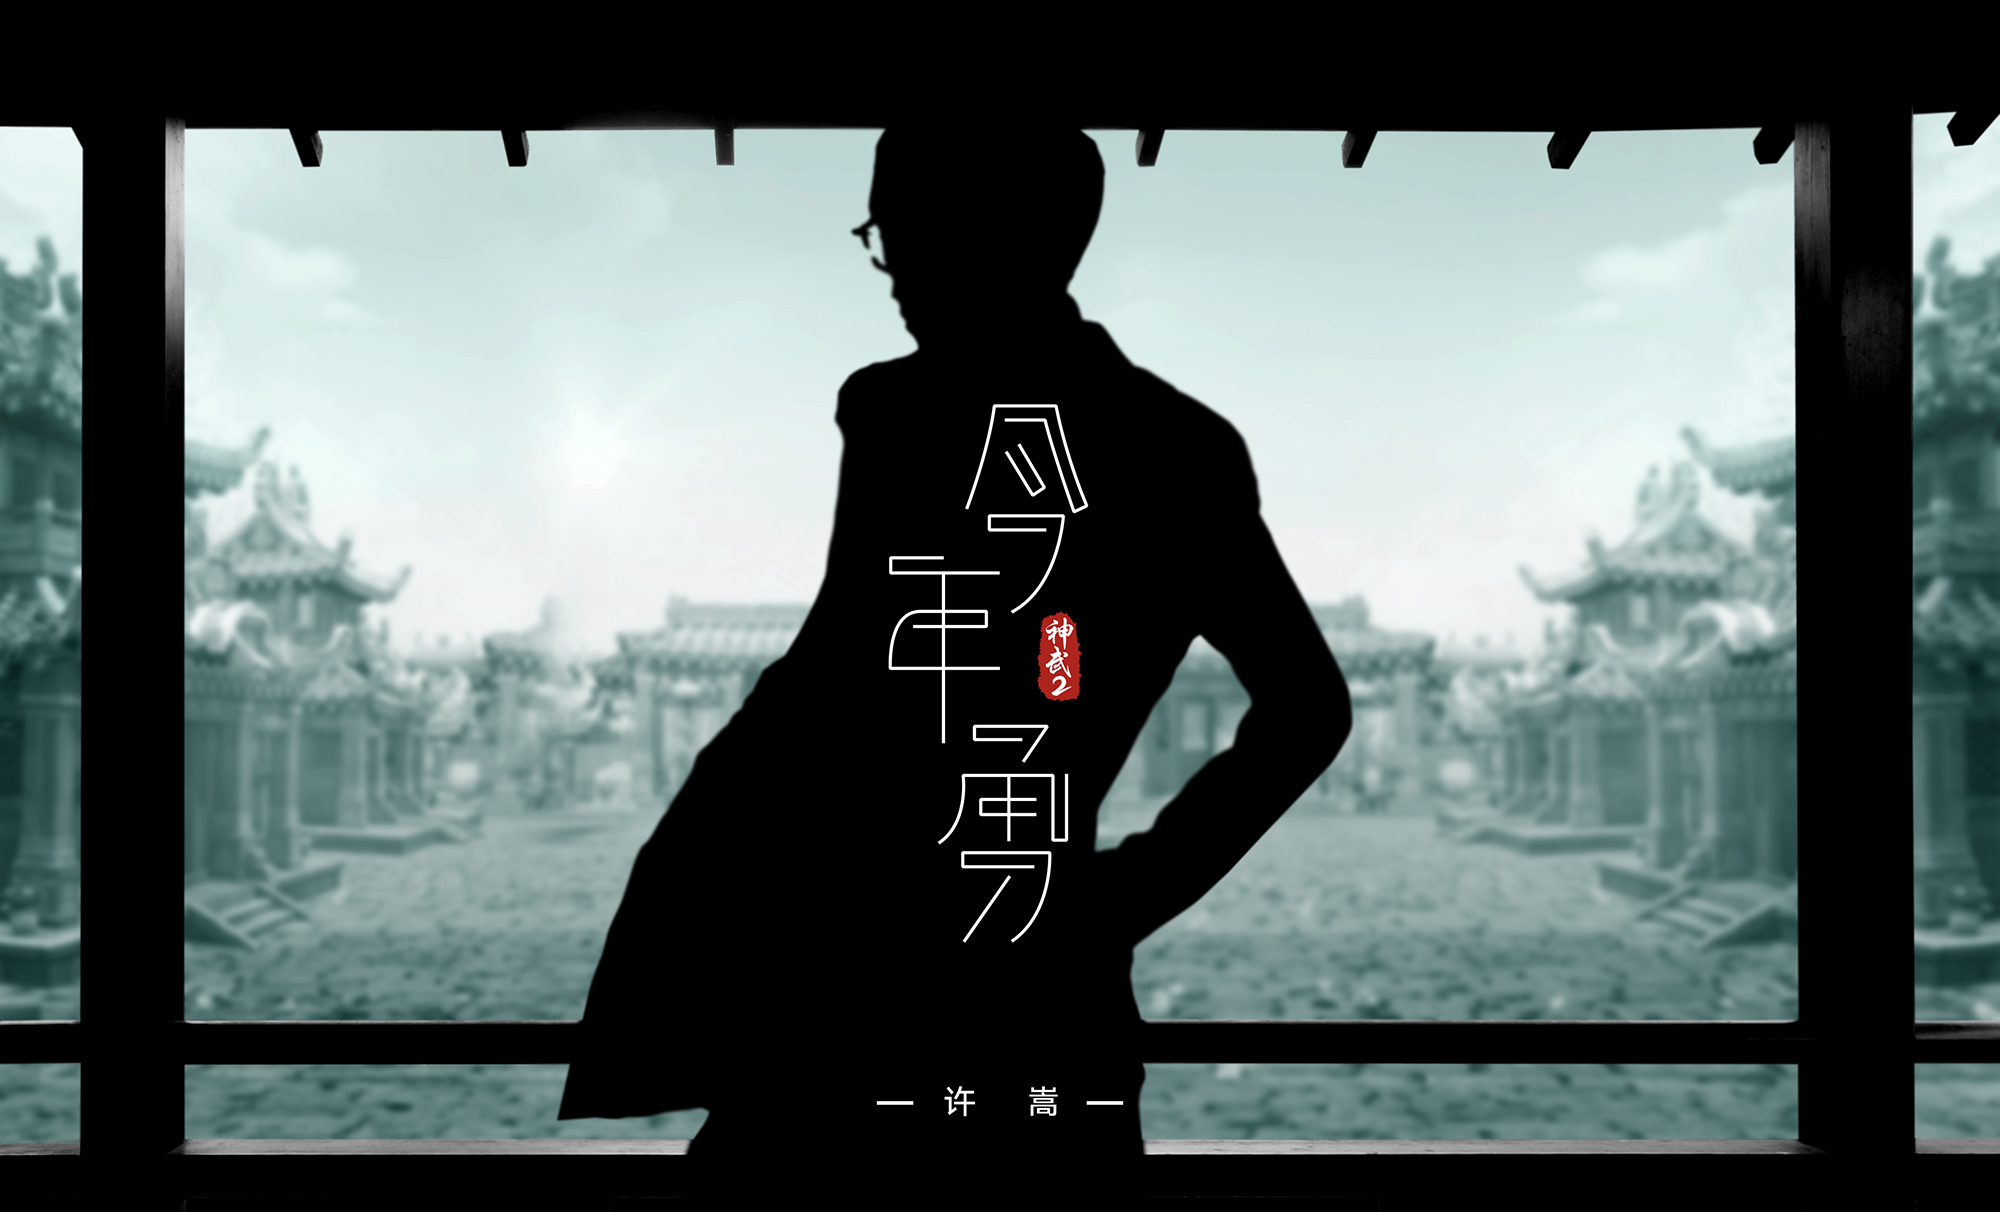 许嵩为《神武2》创主题曲 《今年勇》正式发布